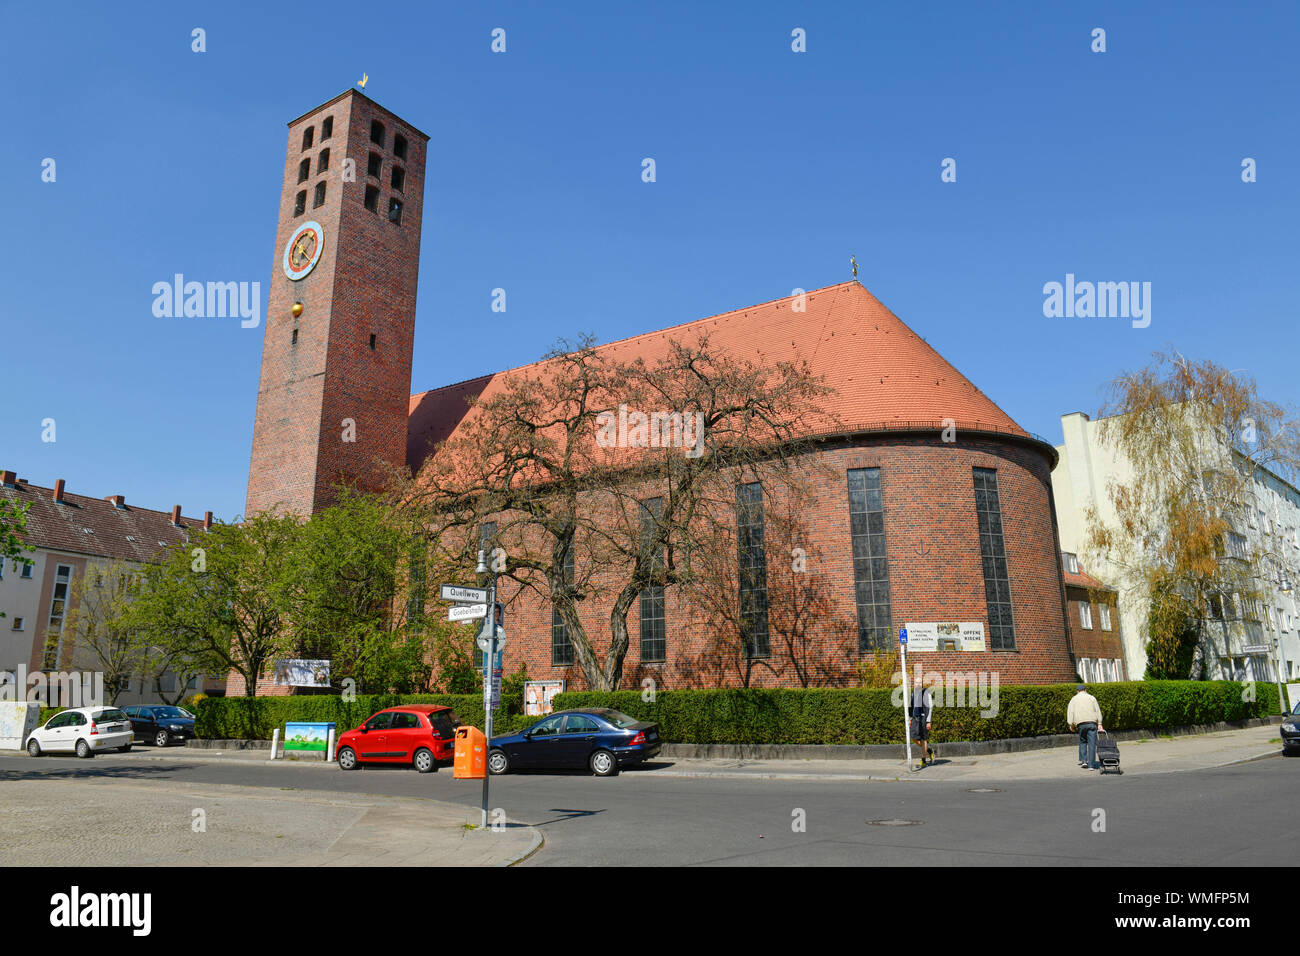 Katholische St.-Joseph-Kirche, Quellweg, Grosssiedlung Siemensstadt, Spandau, Berlin, Deutschland Stock Photo